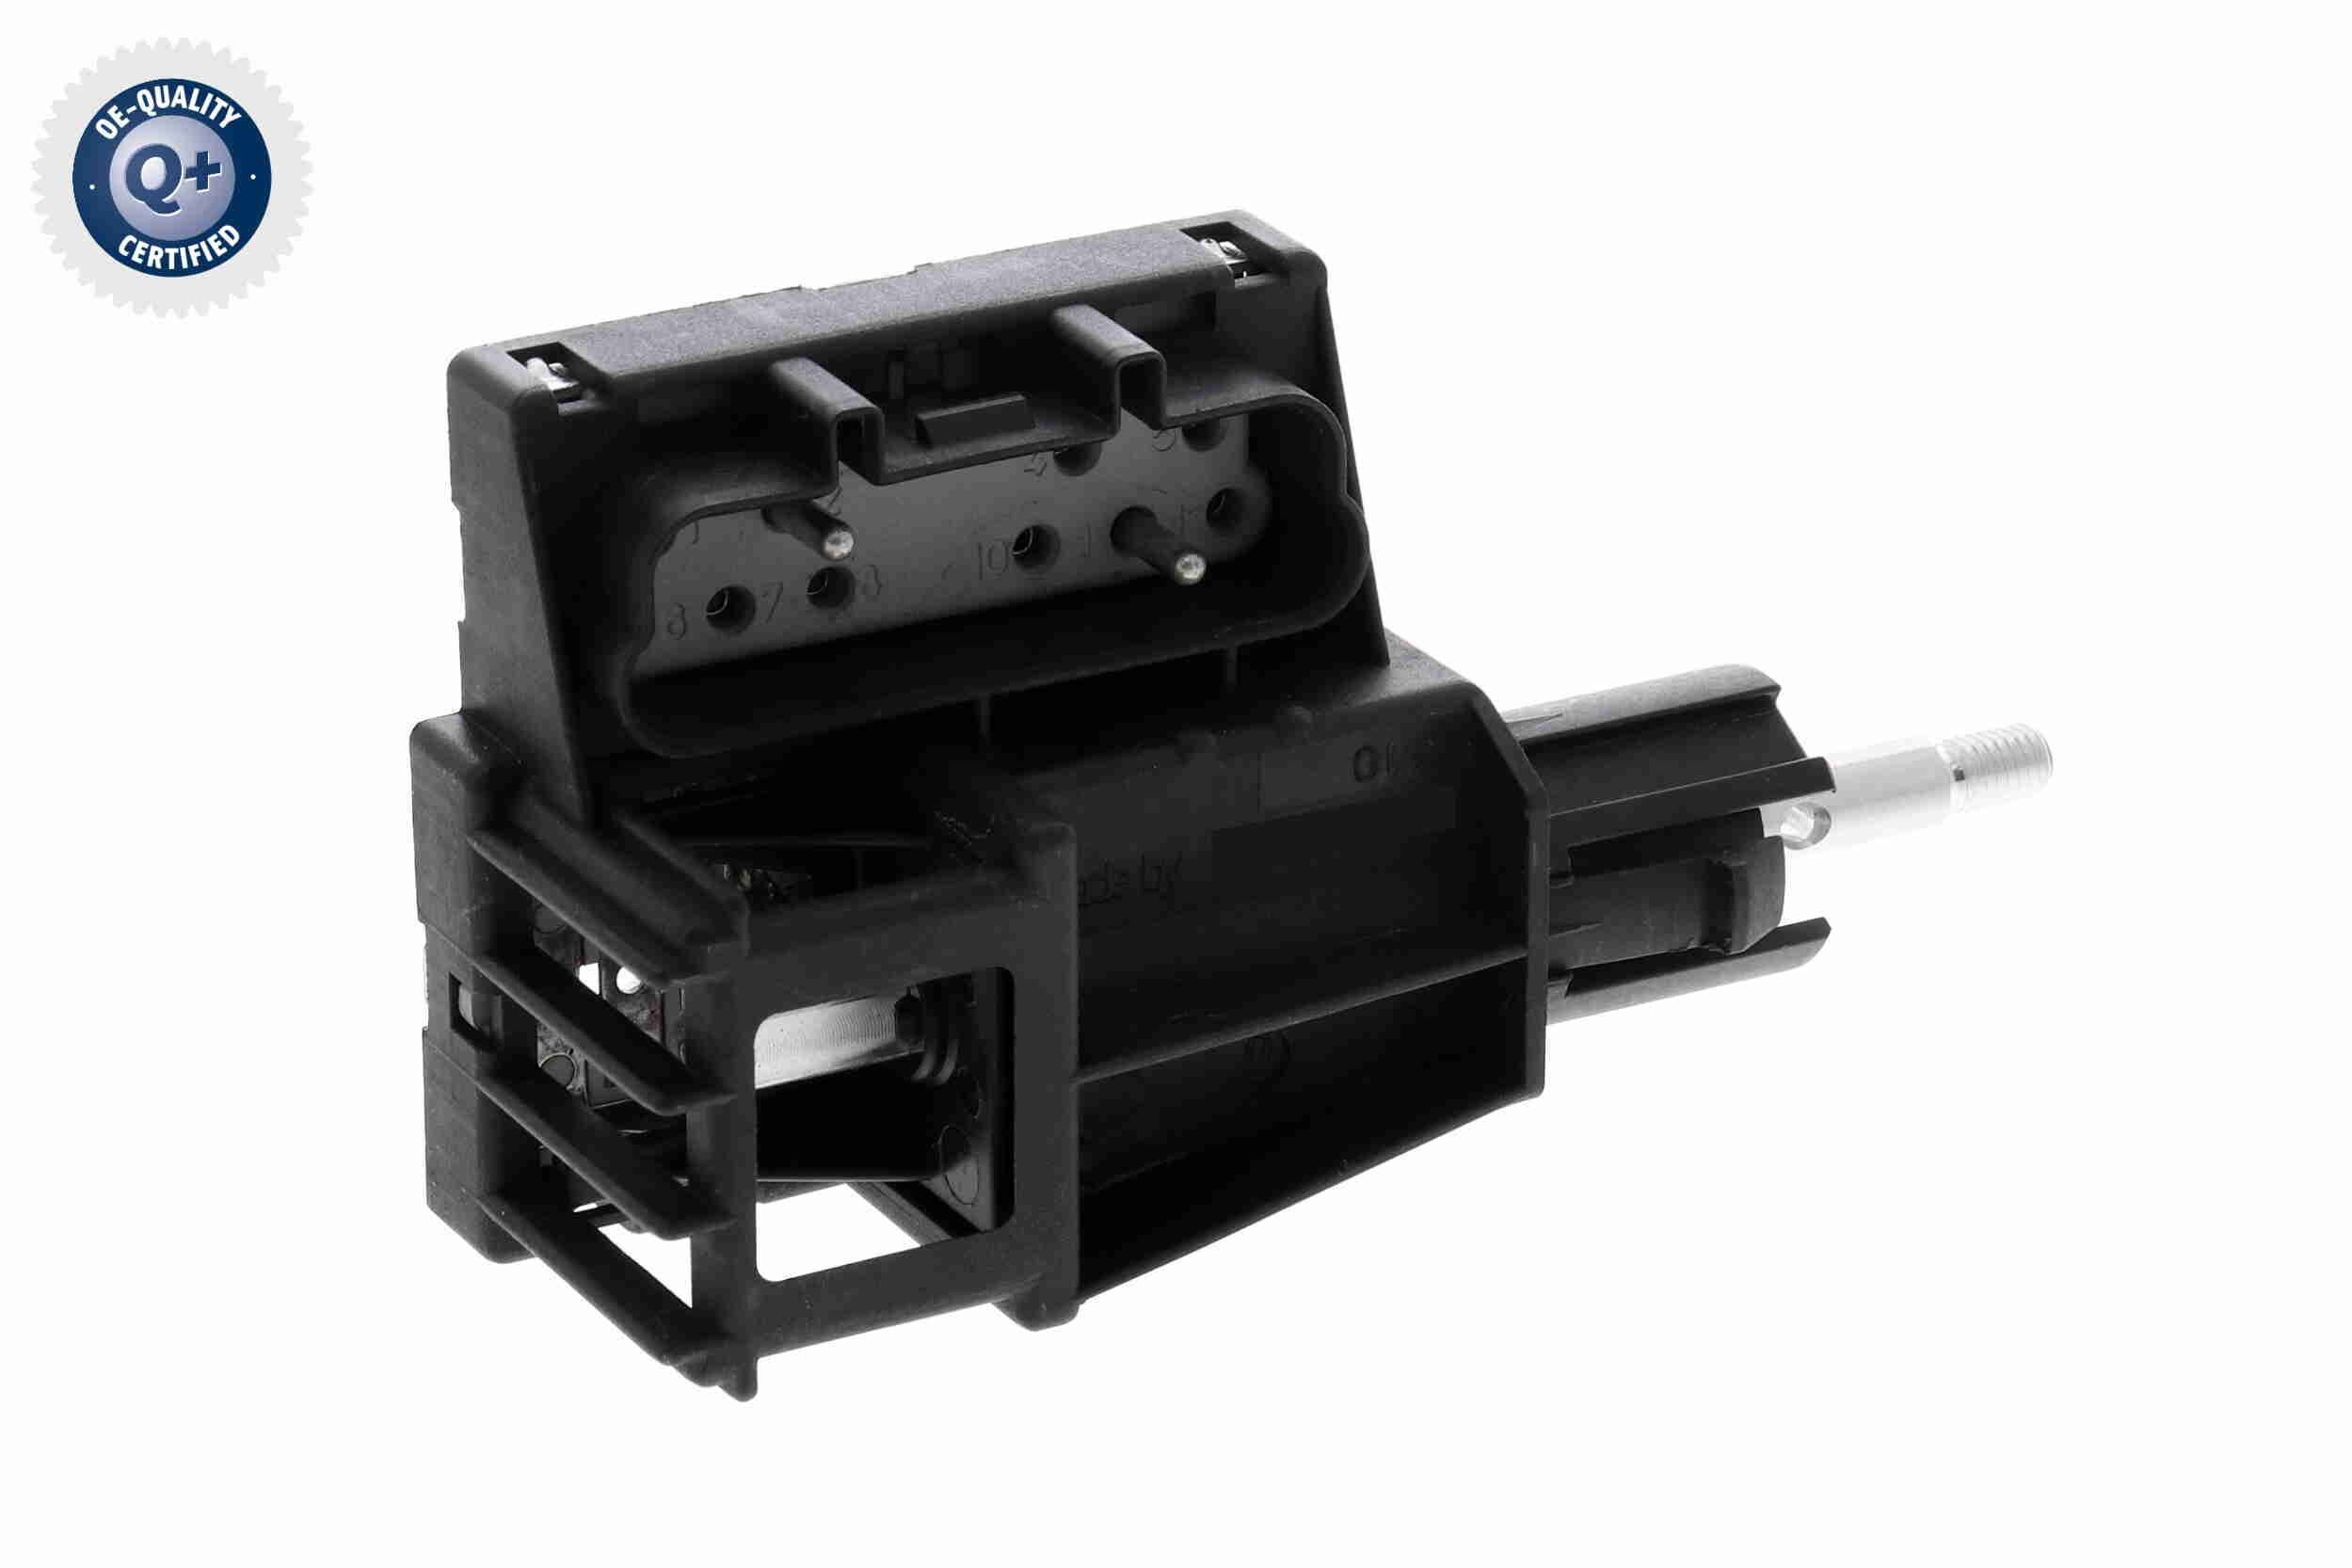 VEMO V20-73-0021 Switch, fog light Q+, original equipment manufacturer quality